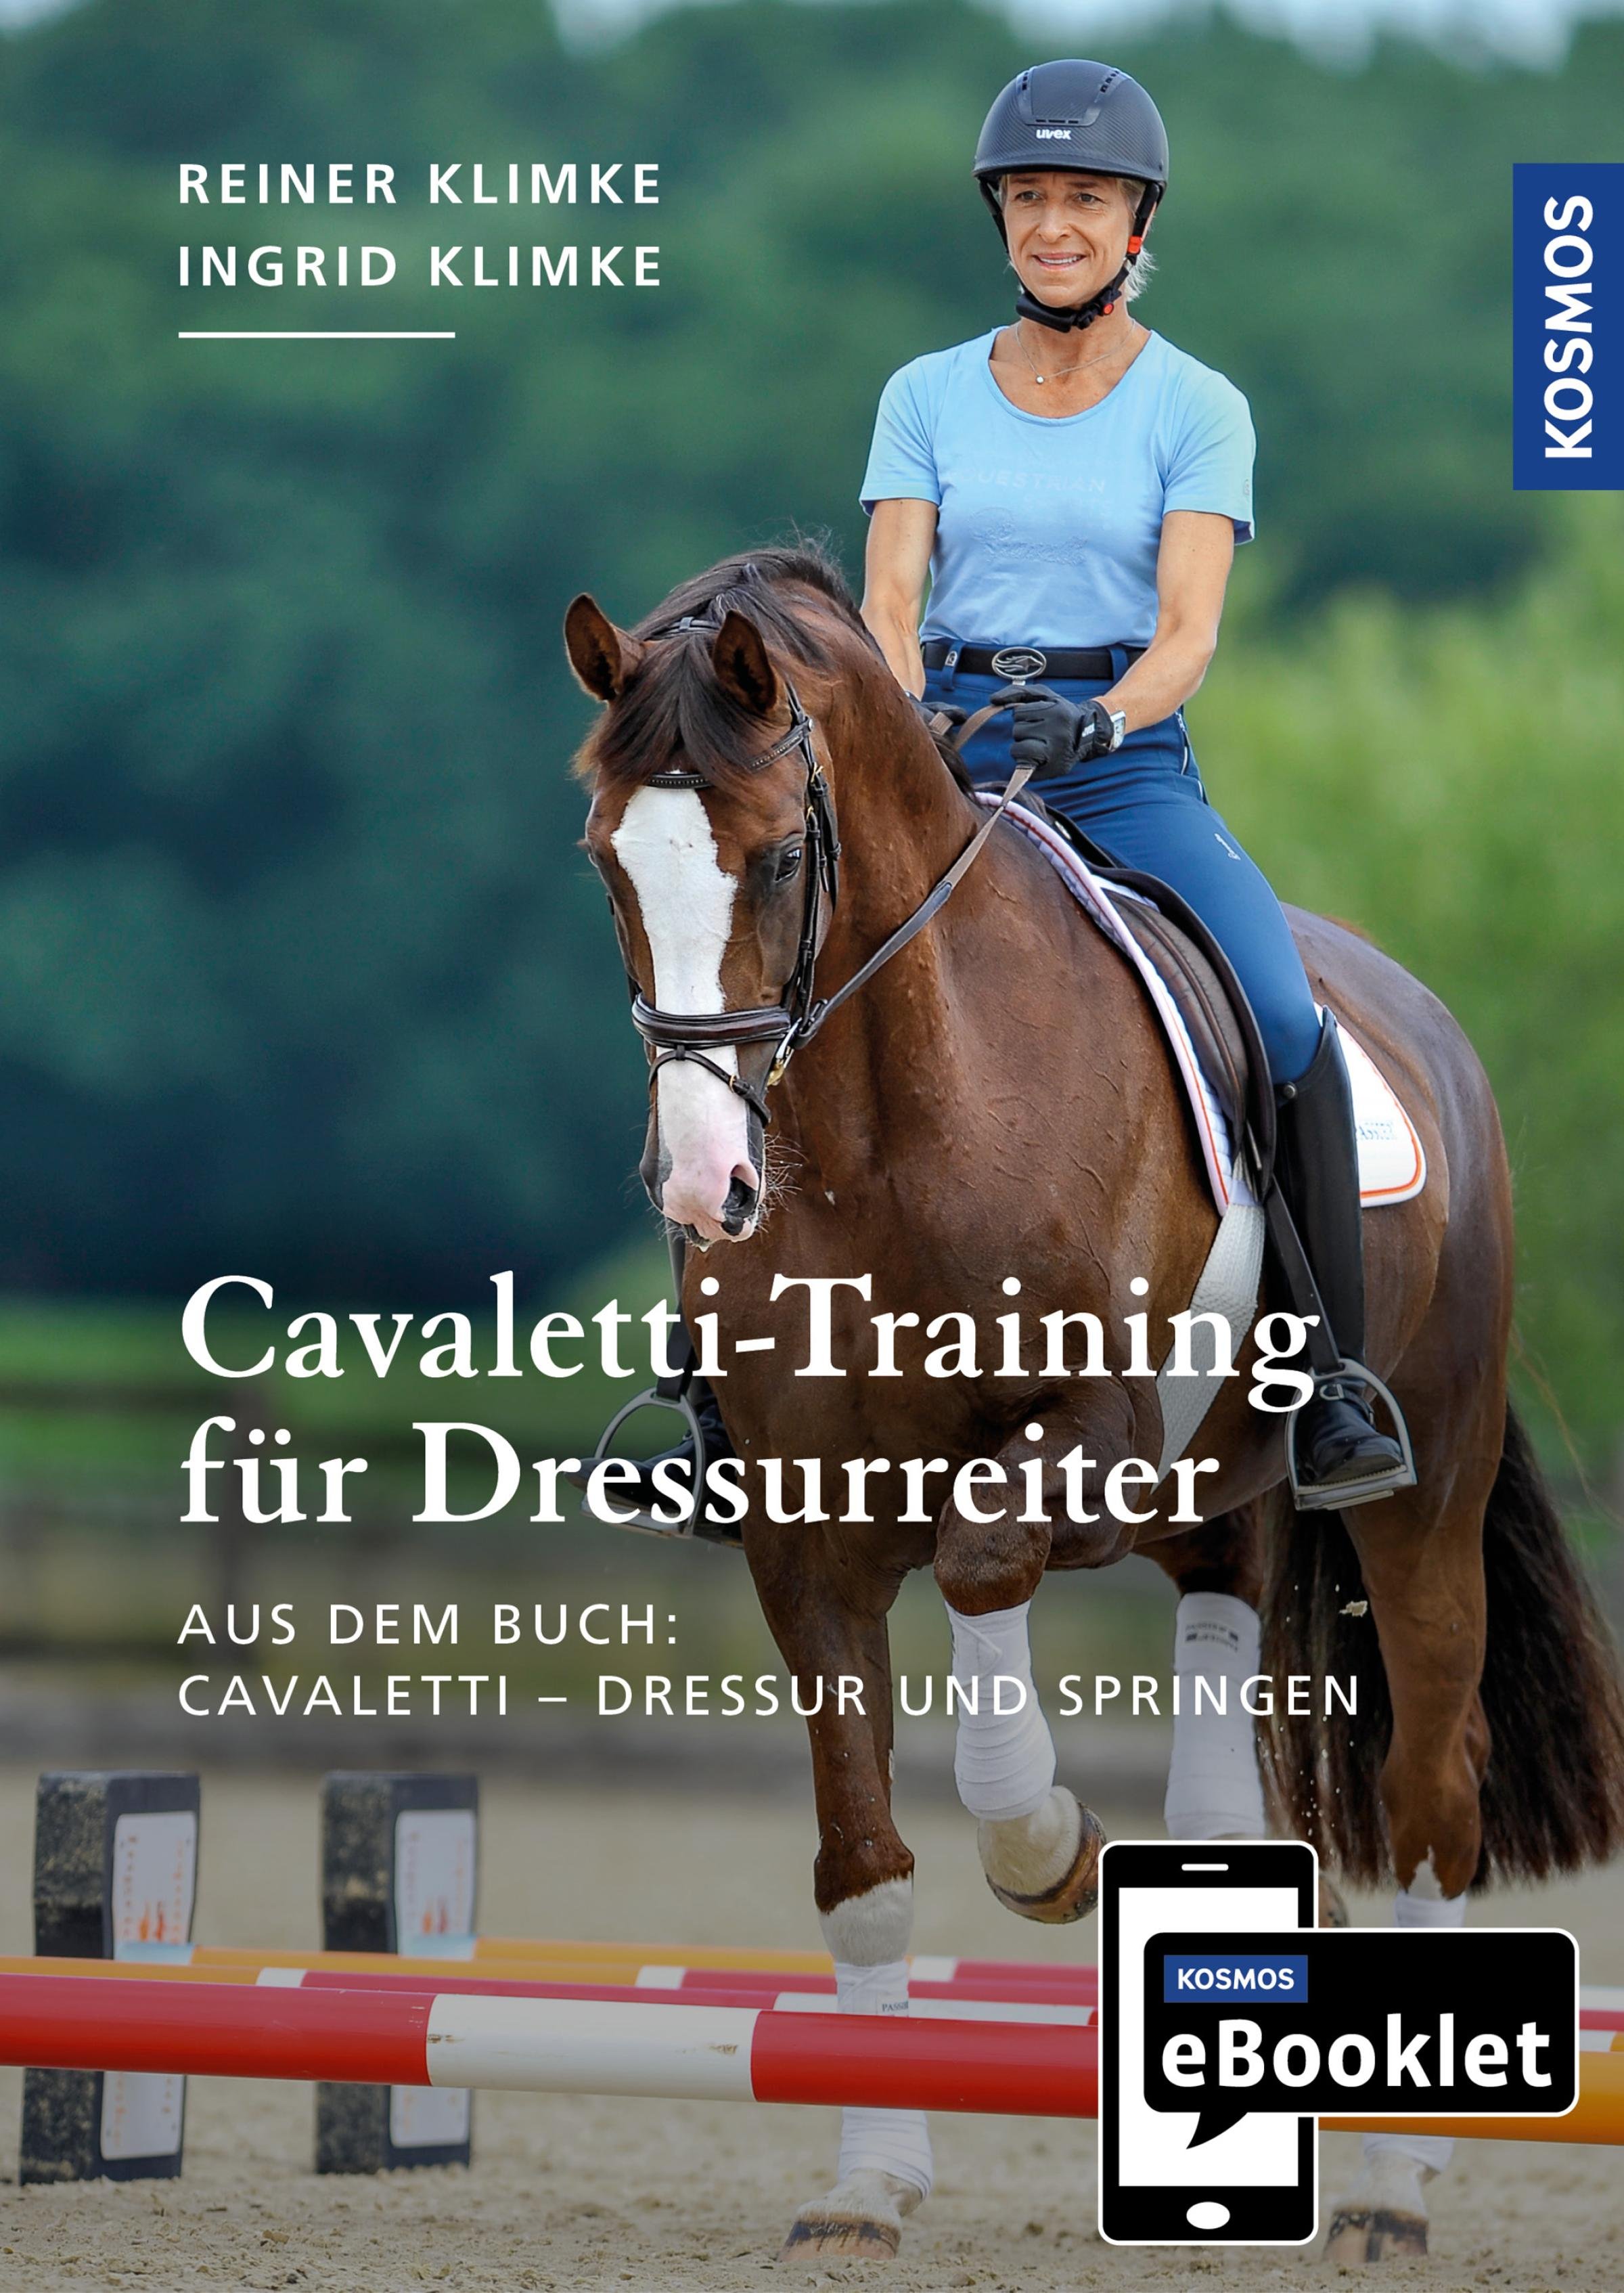 KOSMOS eBooklet: Cavaletti-Training für Dressurreiter